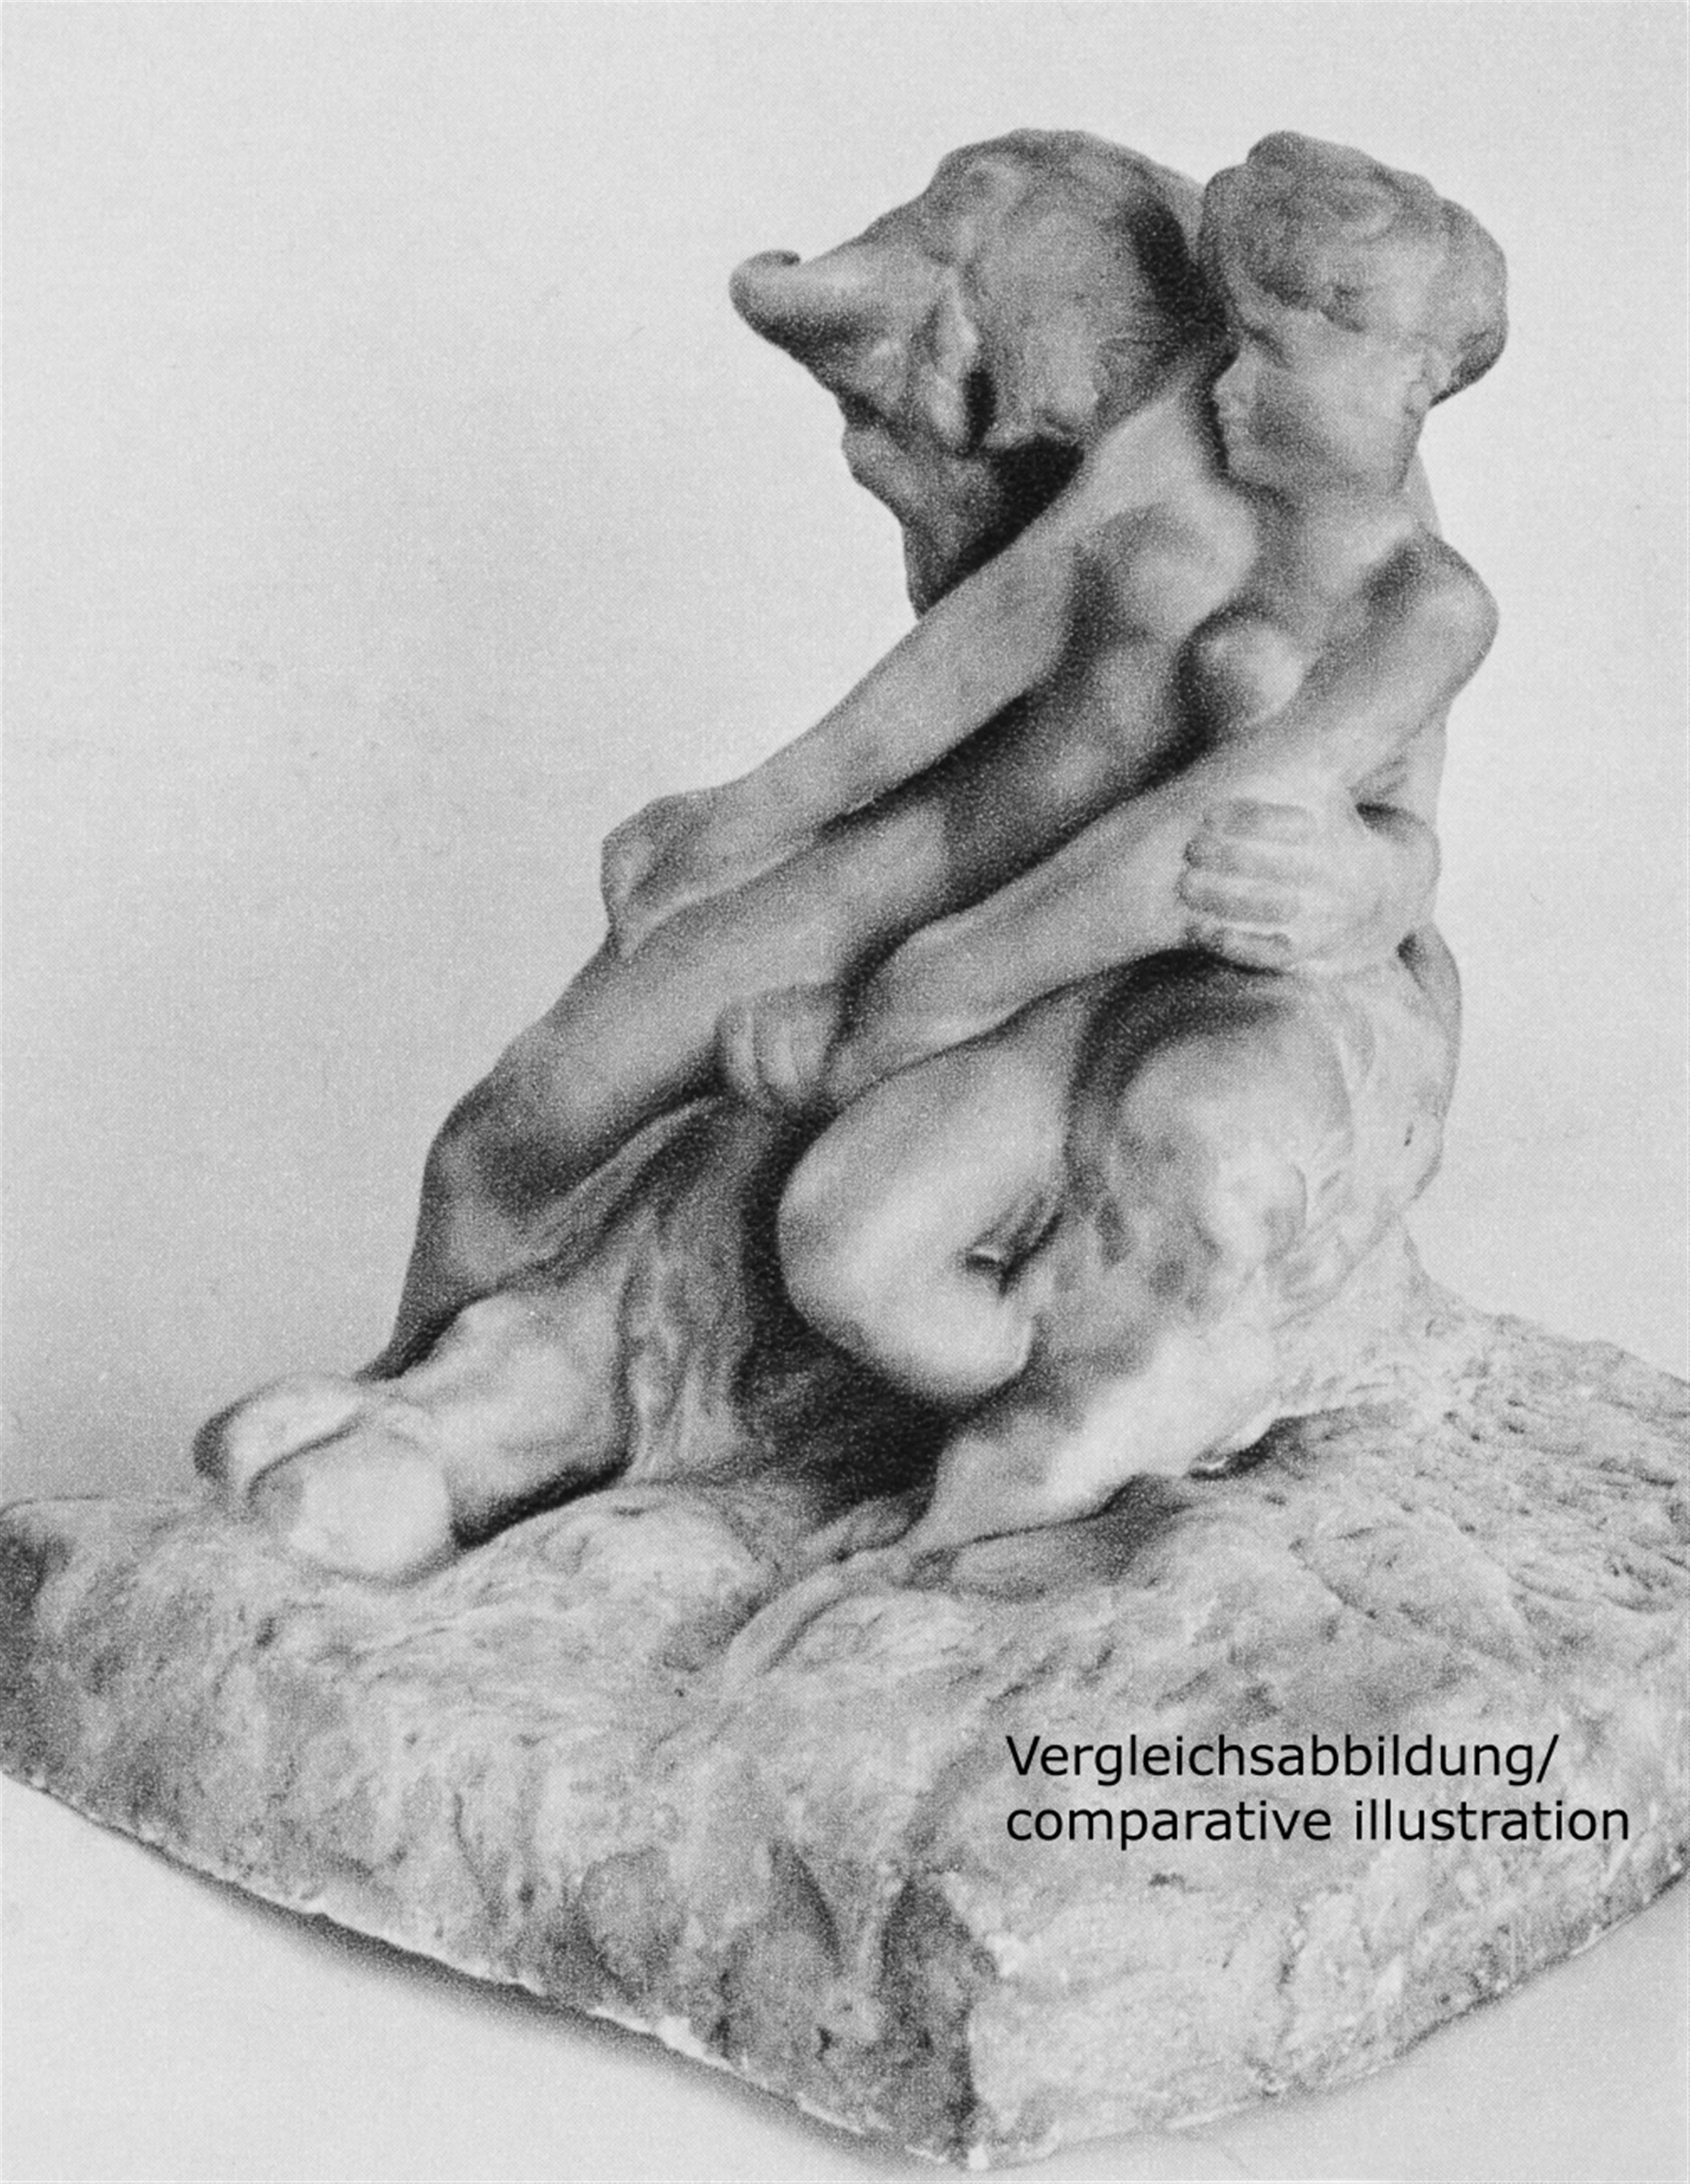 Auguste Rodin - Le Minotaure, version à base carrée (Faune et Nymphe) - image-4